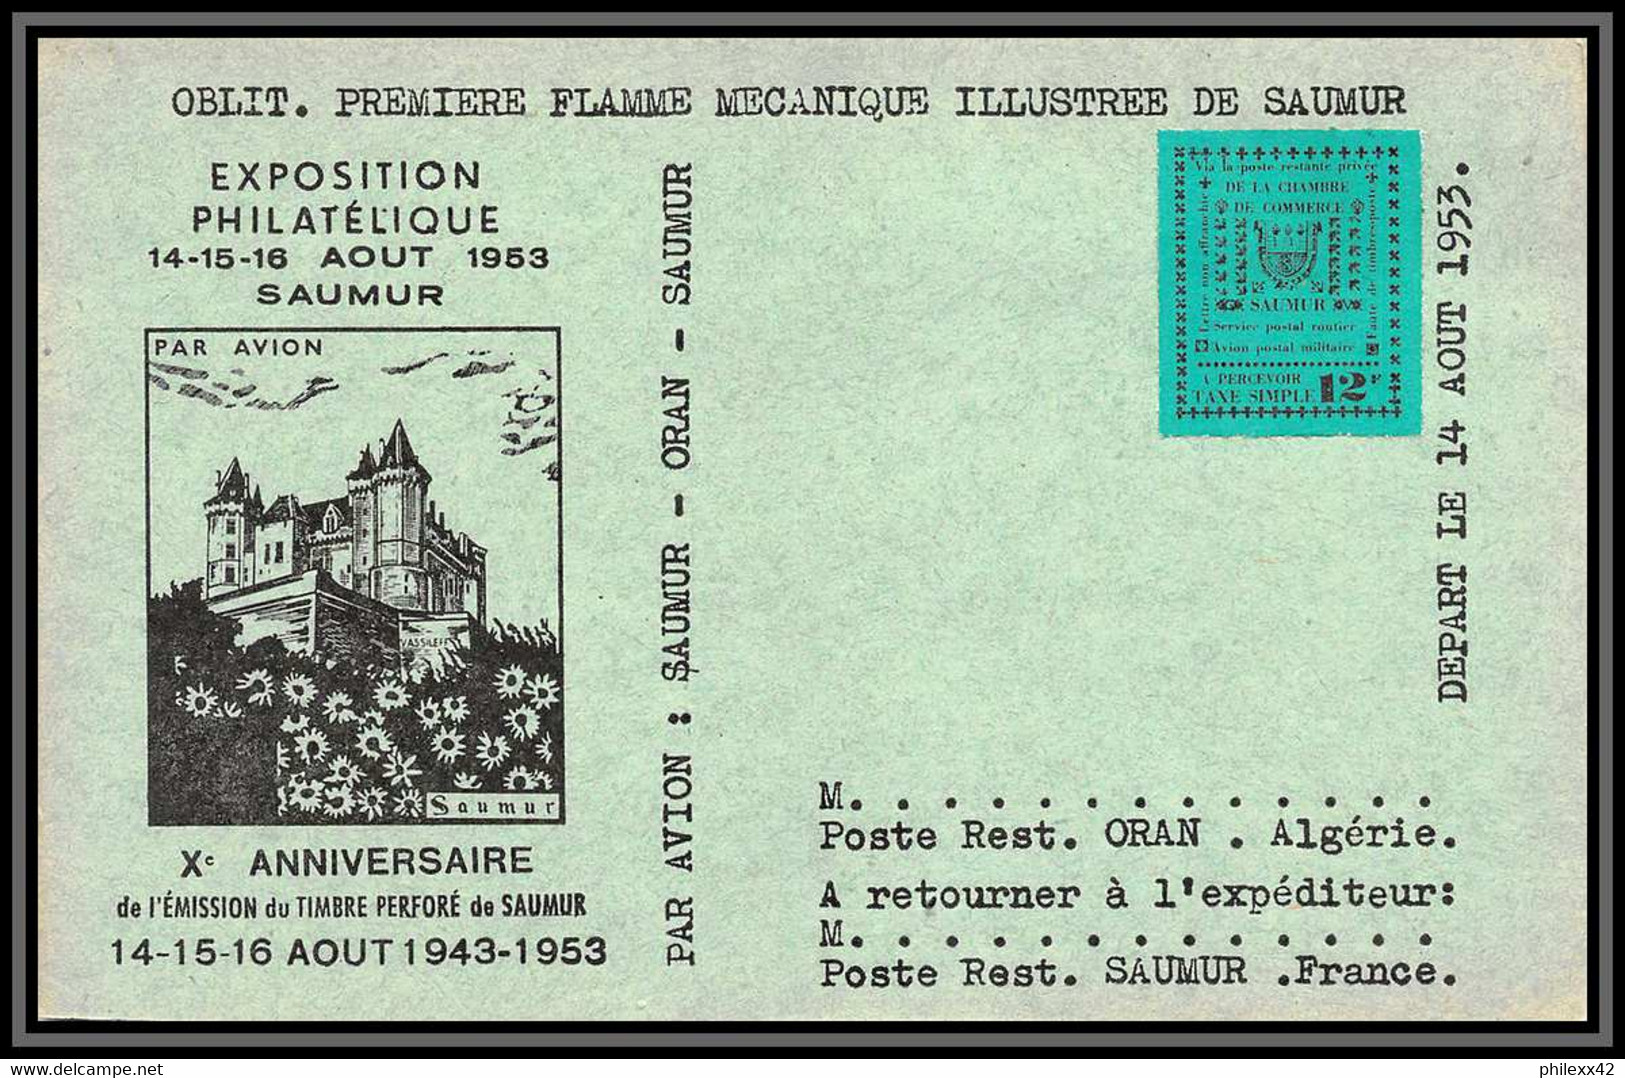 départ 1 euro - 85618/ collection de timbres de grève - saumur 1953 bel ensemble cote +/- 1000 euros - france